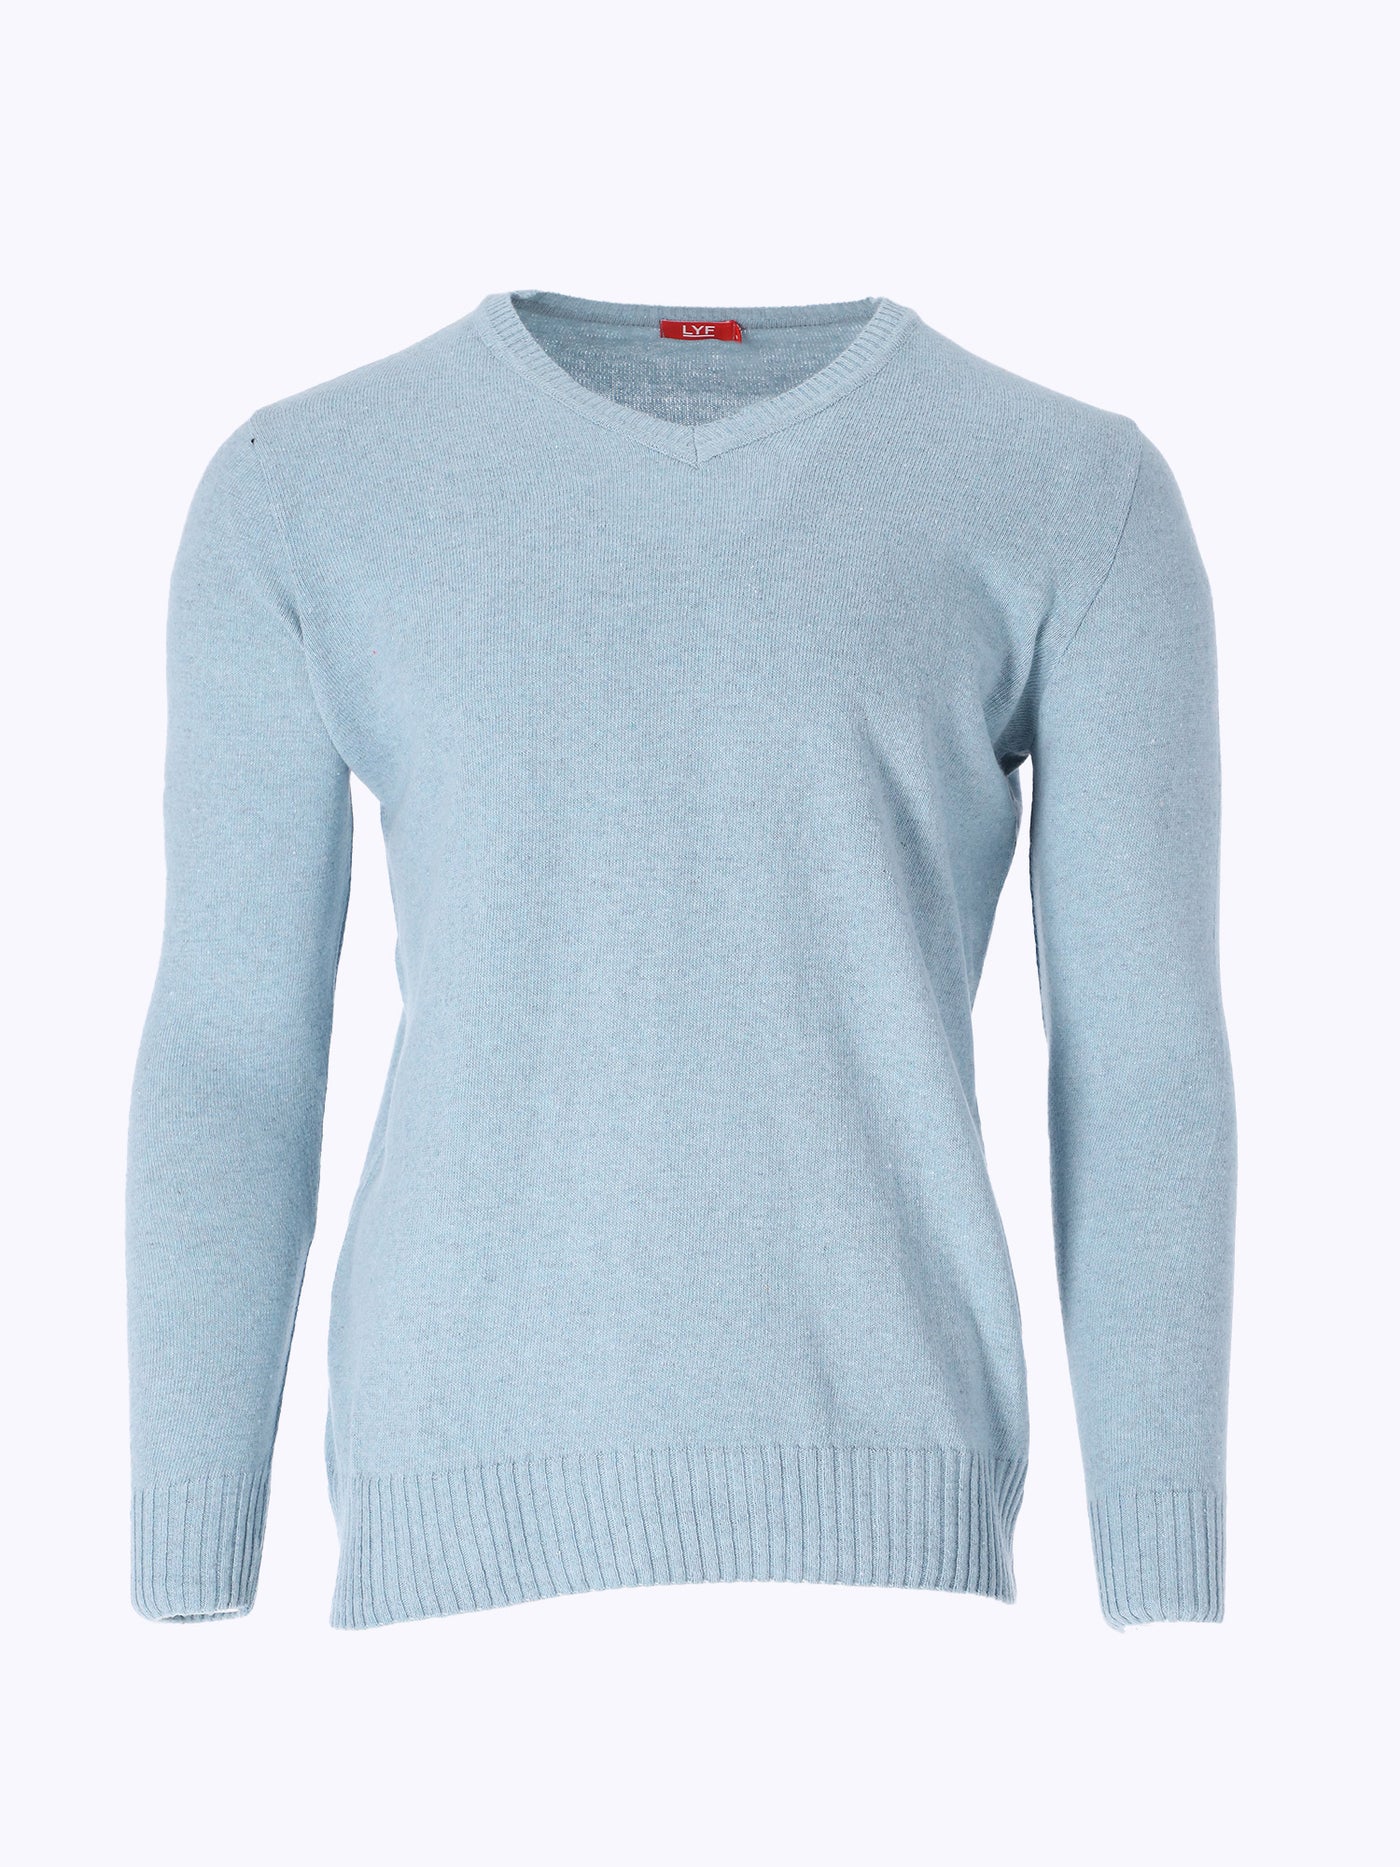 Sweater - V-Neck